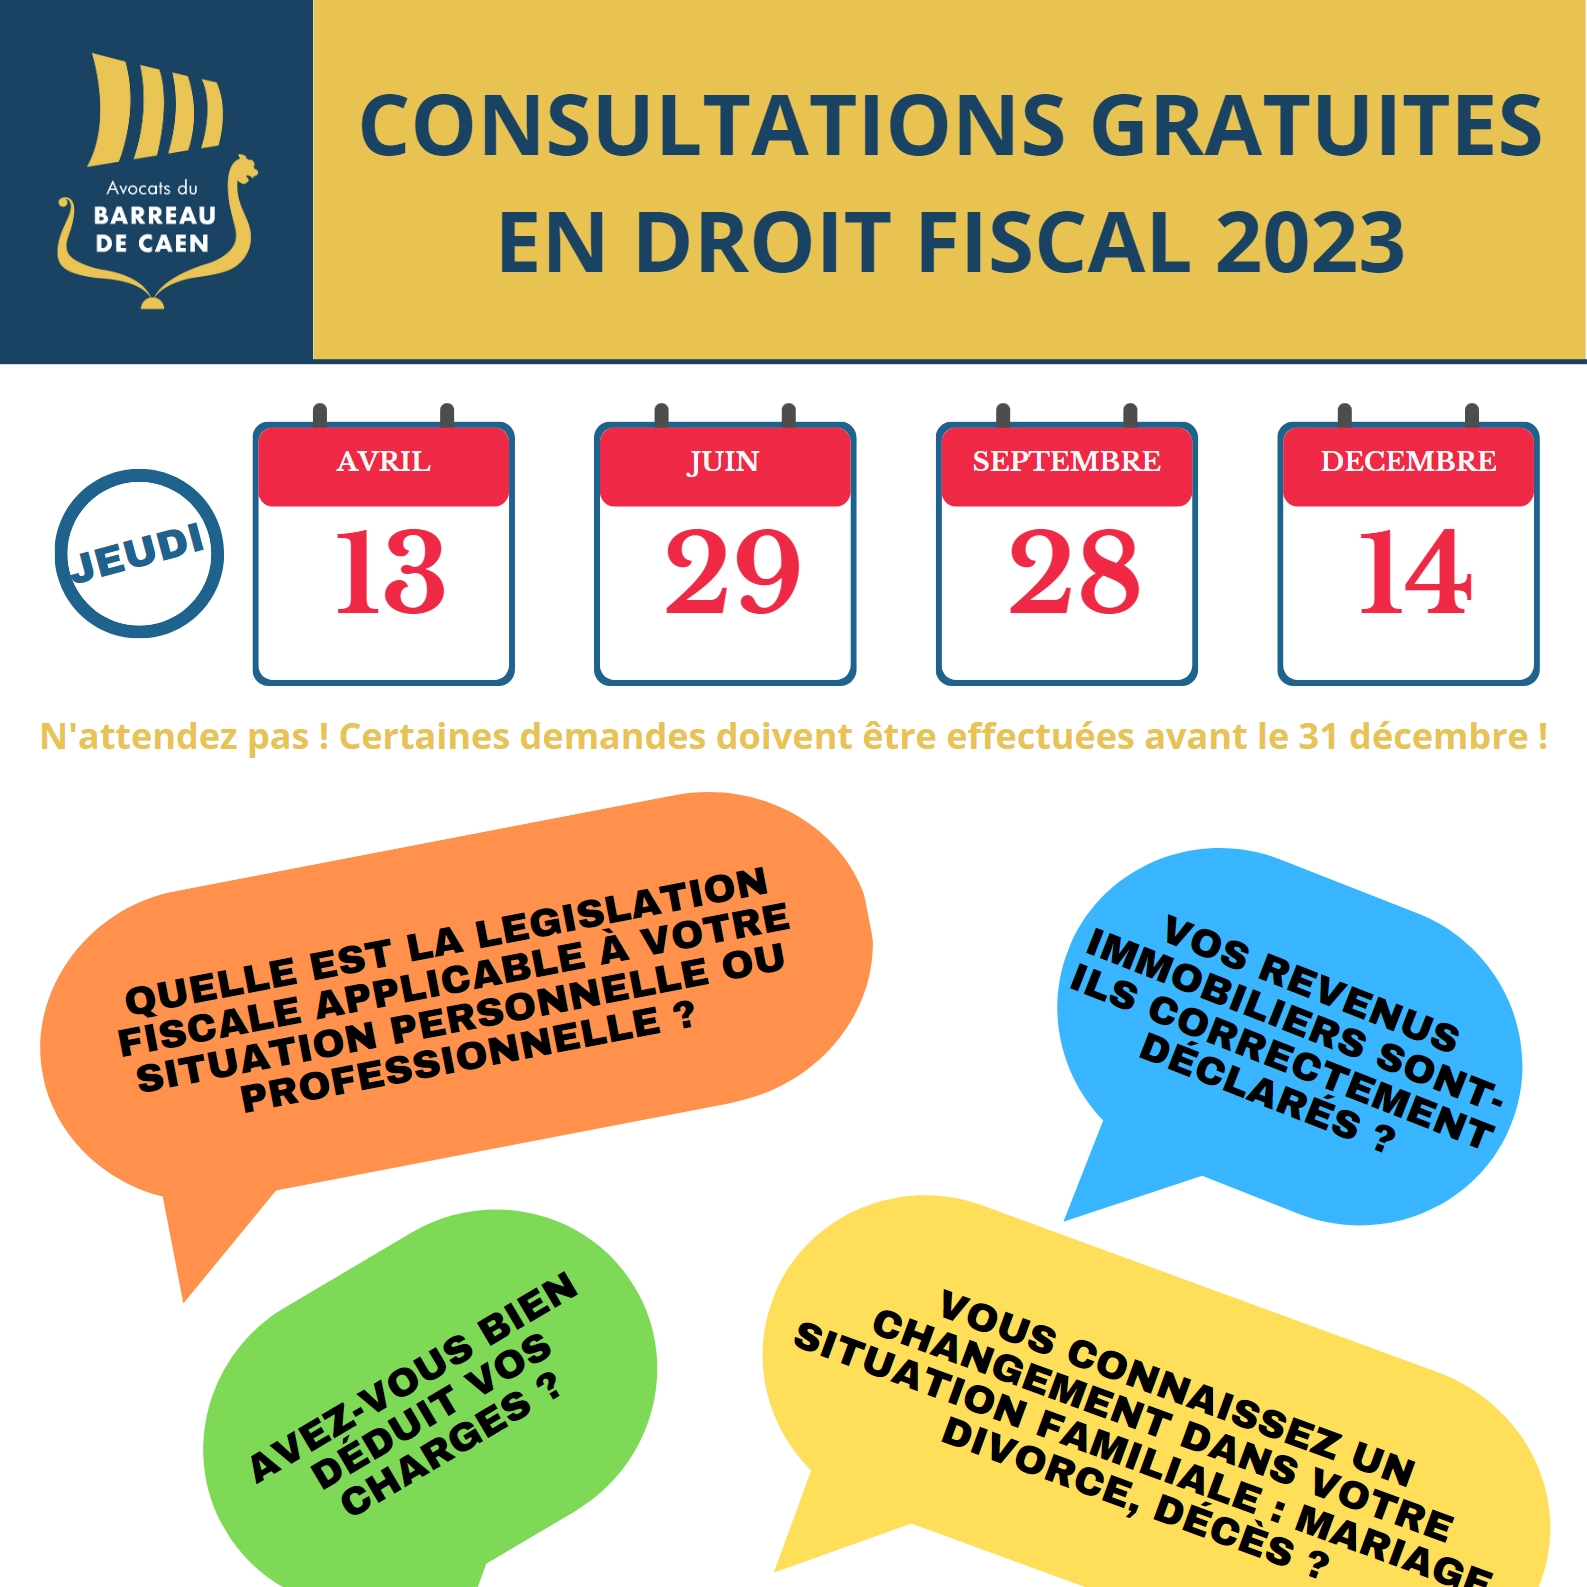 Les consultations gratuites en droit fiscal sont de retour en 2023 !